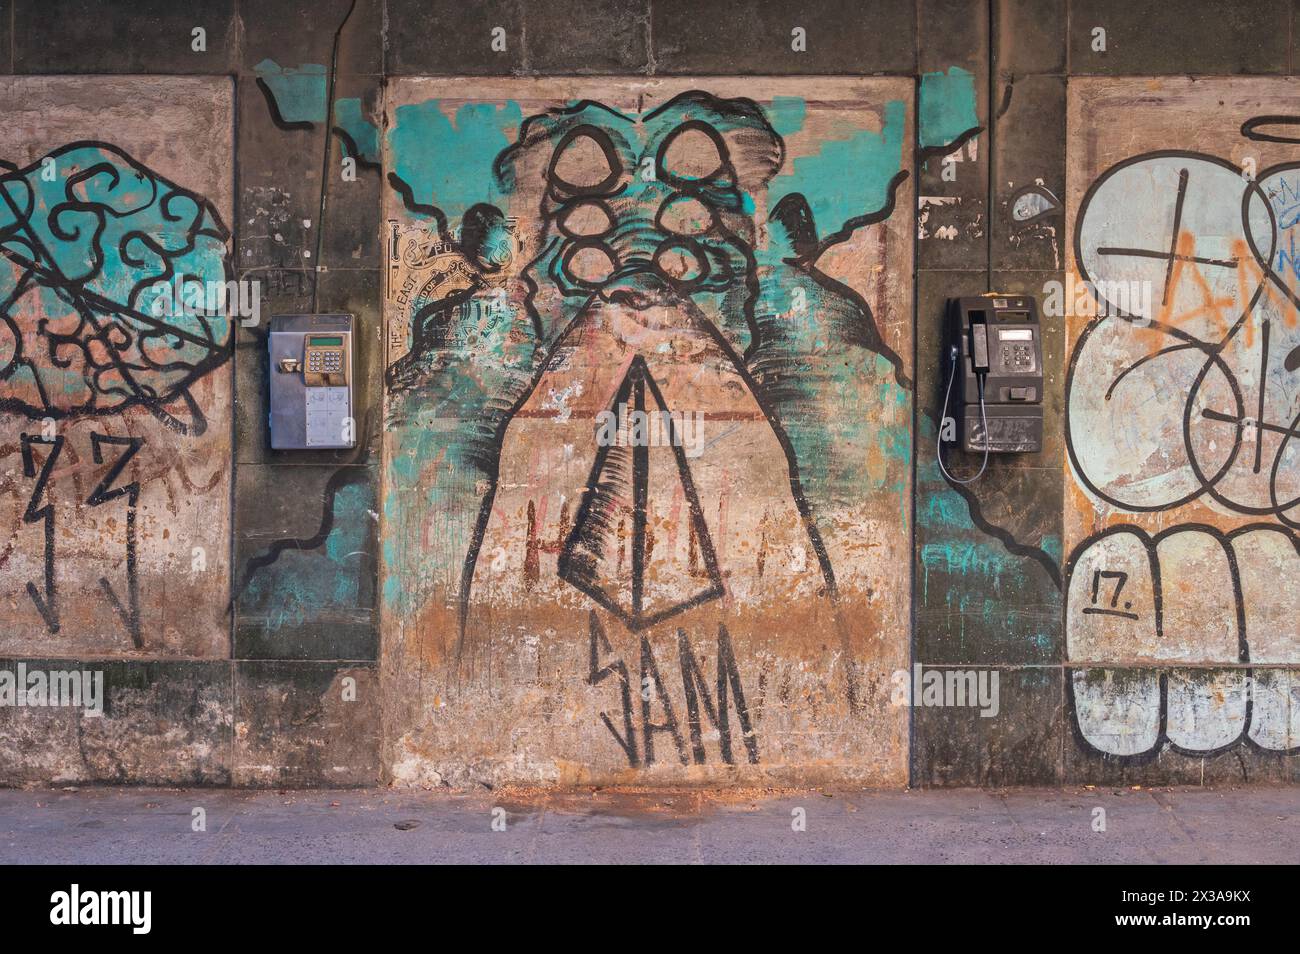 Un exemple du merveilleux art de rue que l'on peut trouver dans les parties les plus anciennes de la Havane, Cuba. Banque D'Images